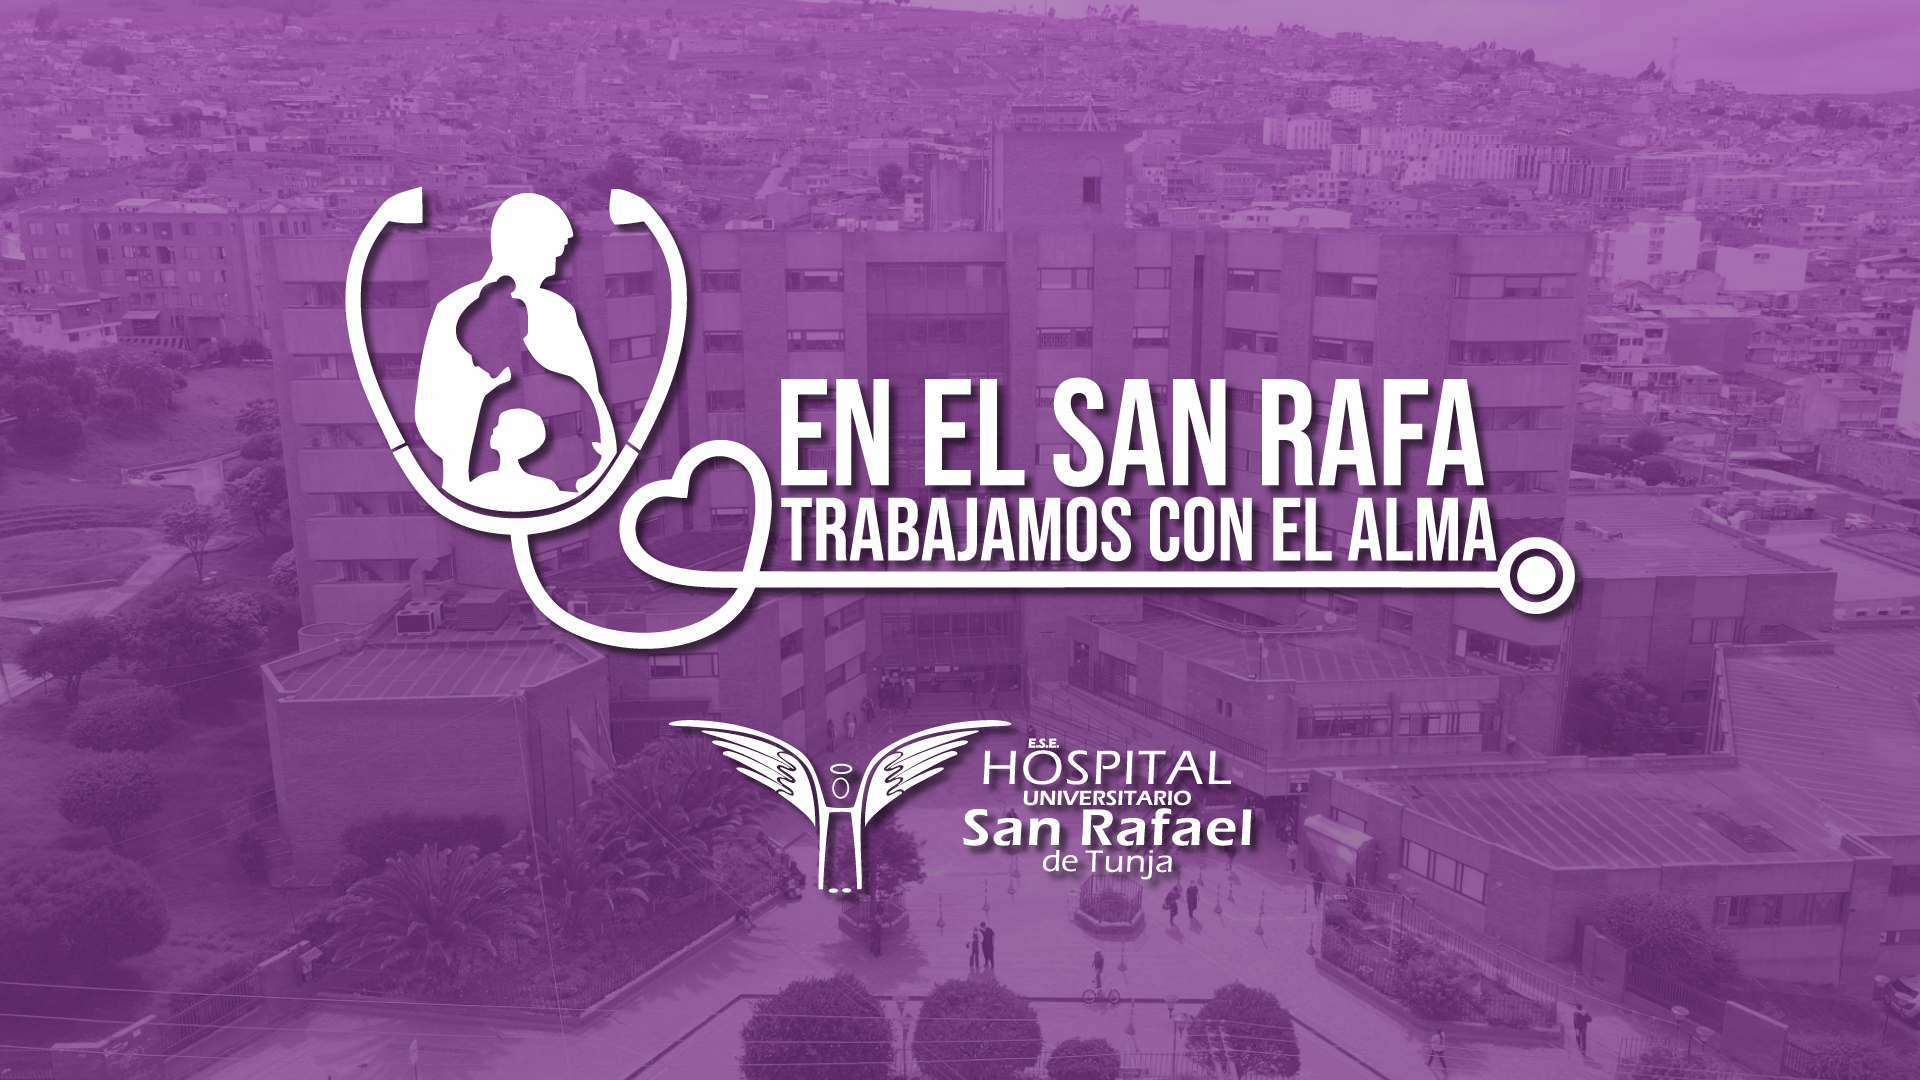 ESE Hospital Universitario San Rafael de Tunja